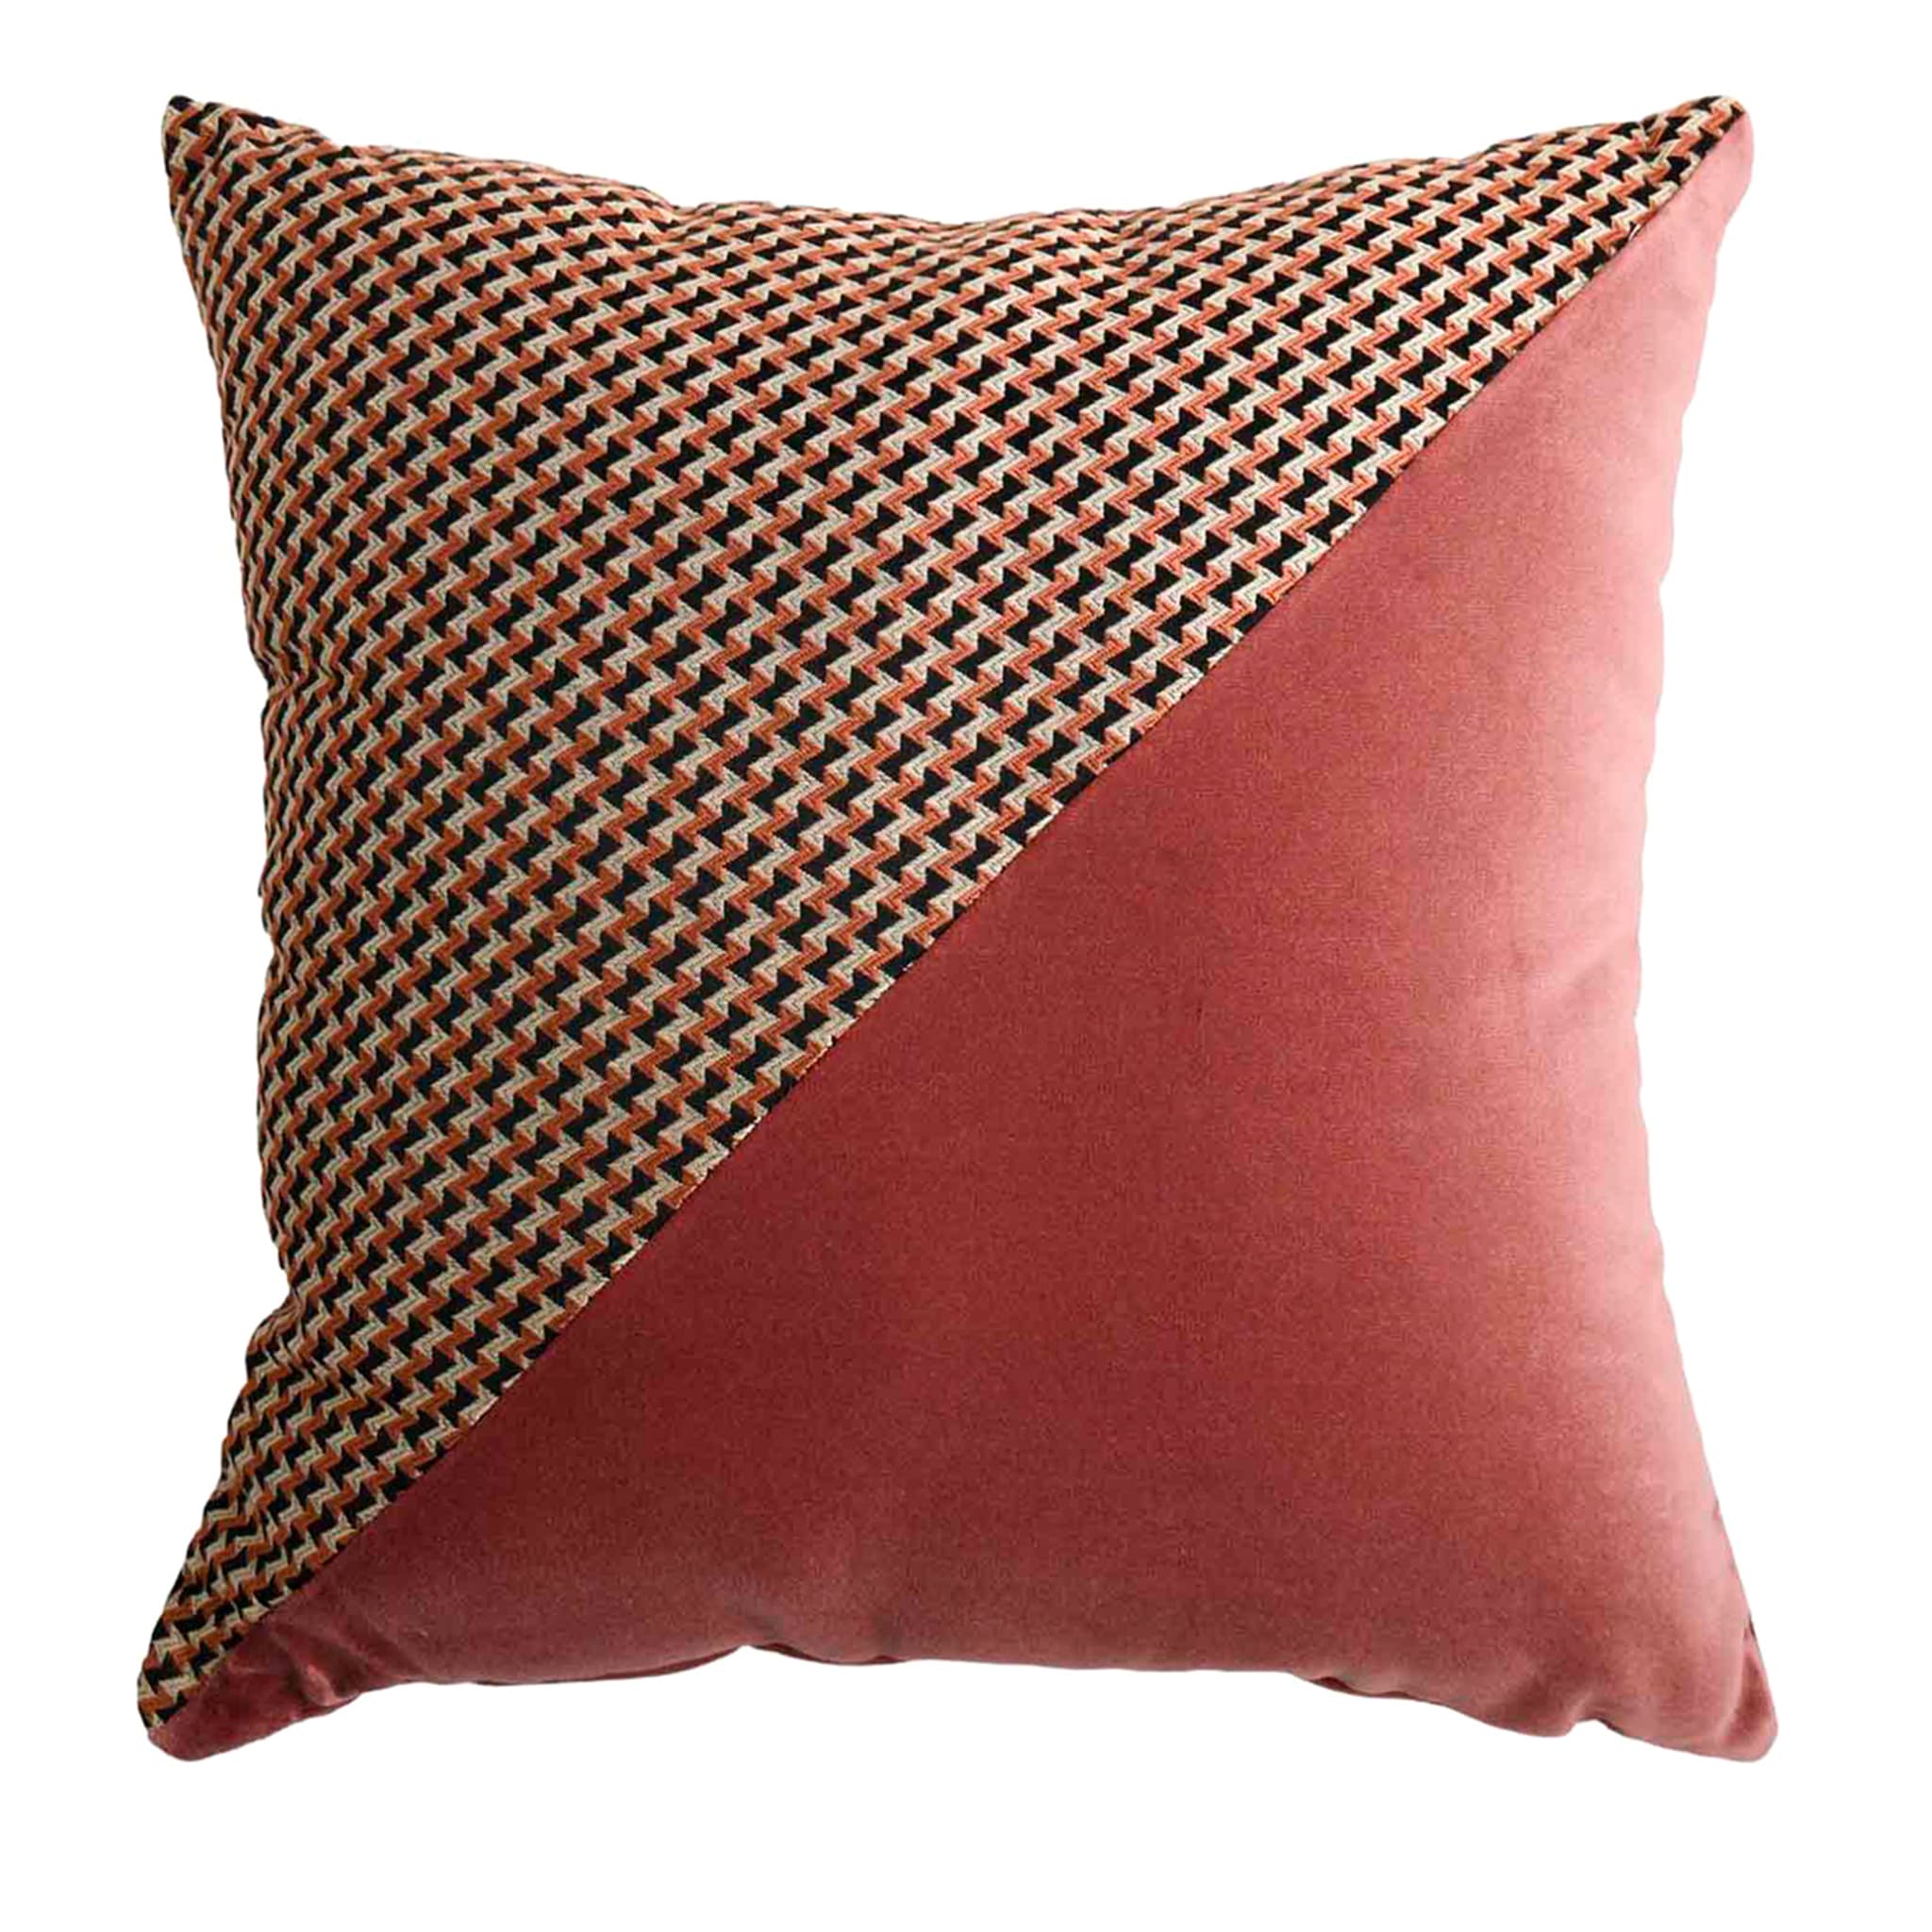 Carrè Diagonal Cushion in Micro-Patterned jacquard fabric - Main view